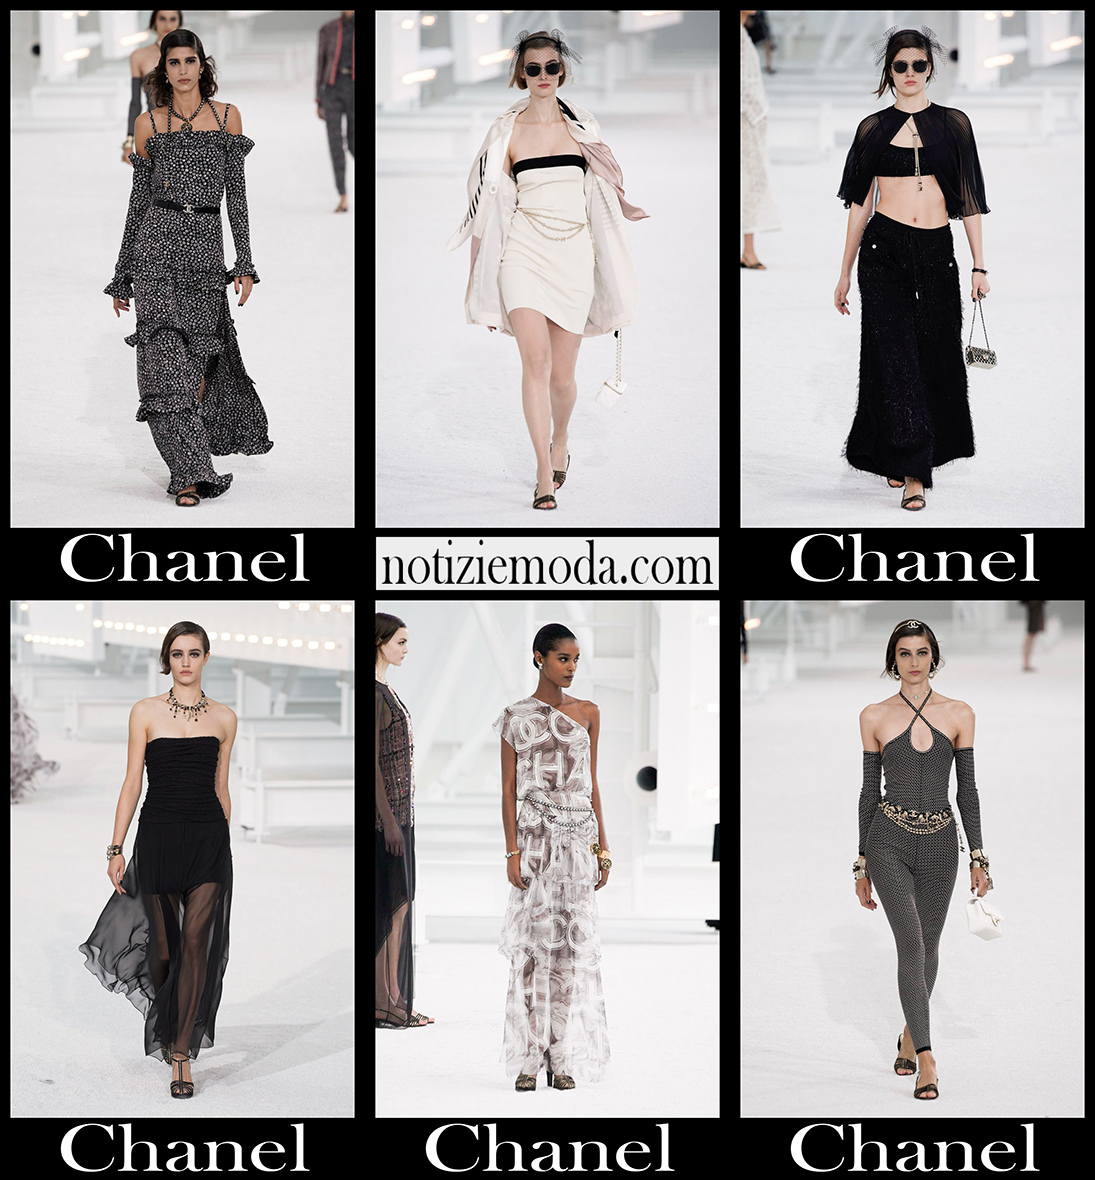 Collezione Chanel primavera estate 2021 moda donna